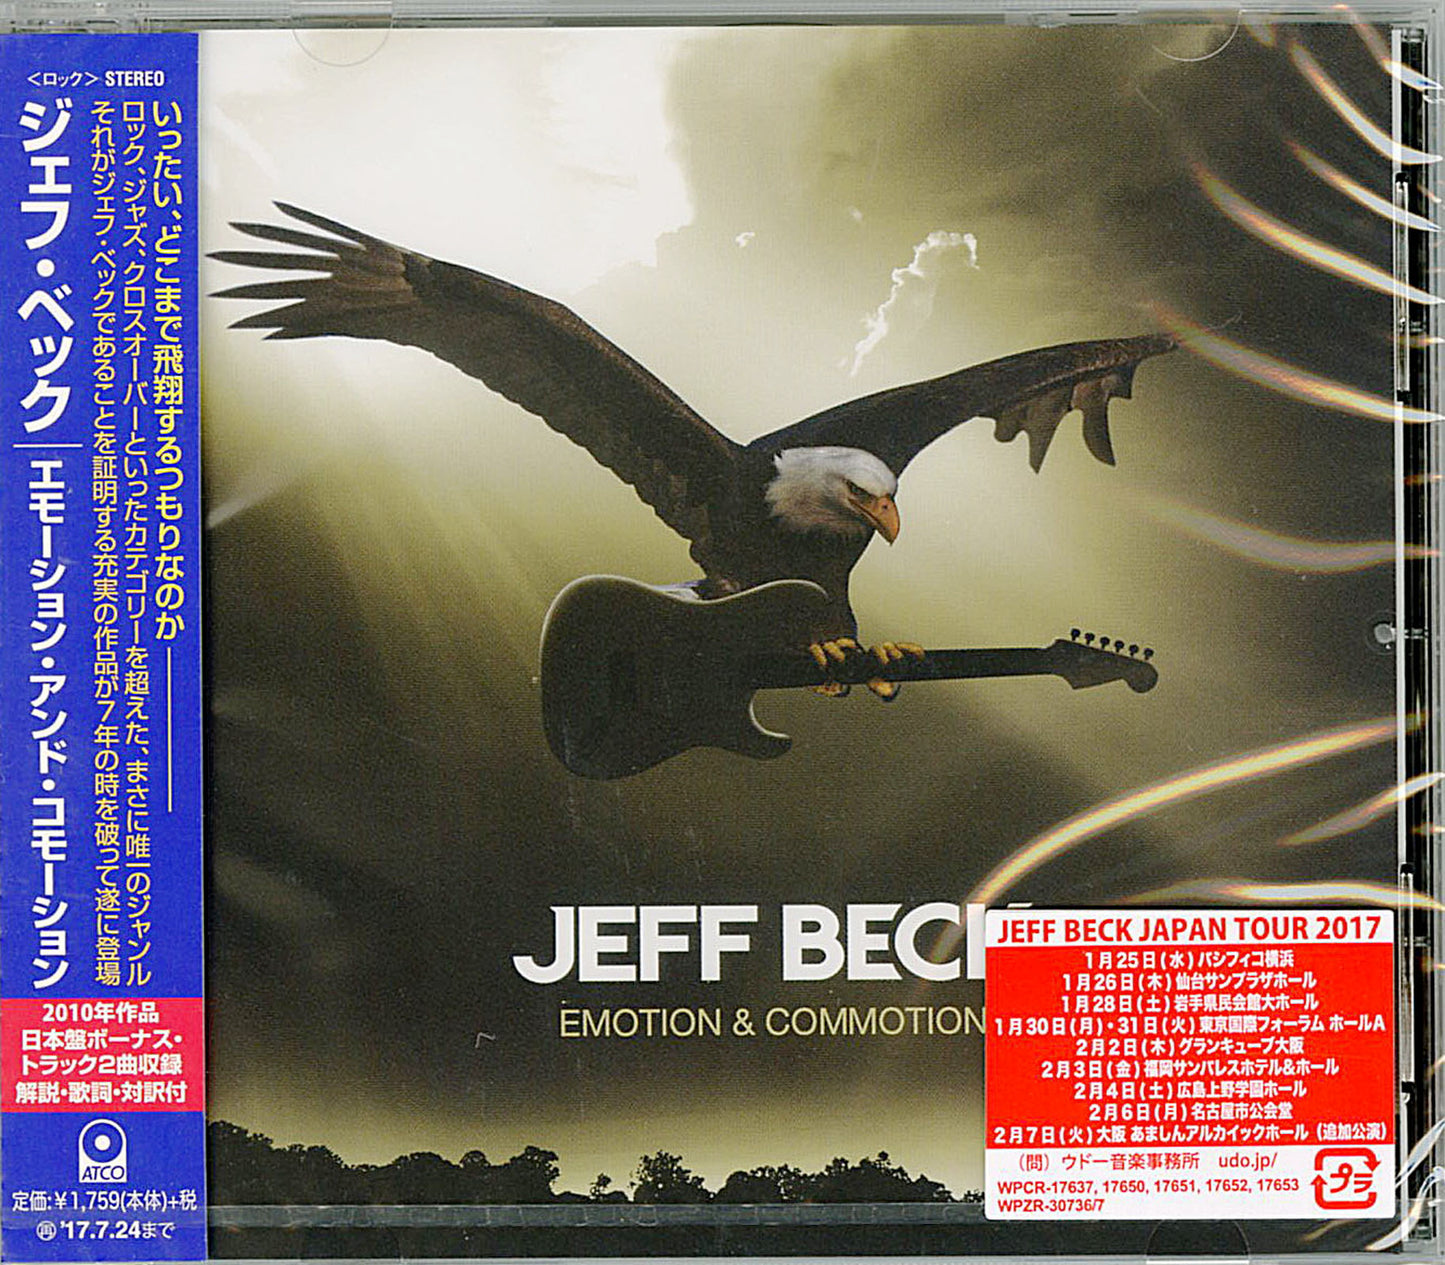 Jeff Beck - Emotion & Commotion - Japan  CD Bonus Track